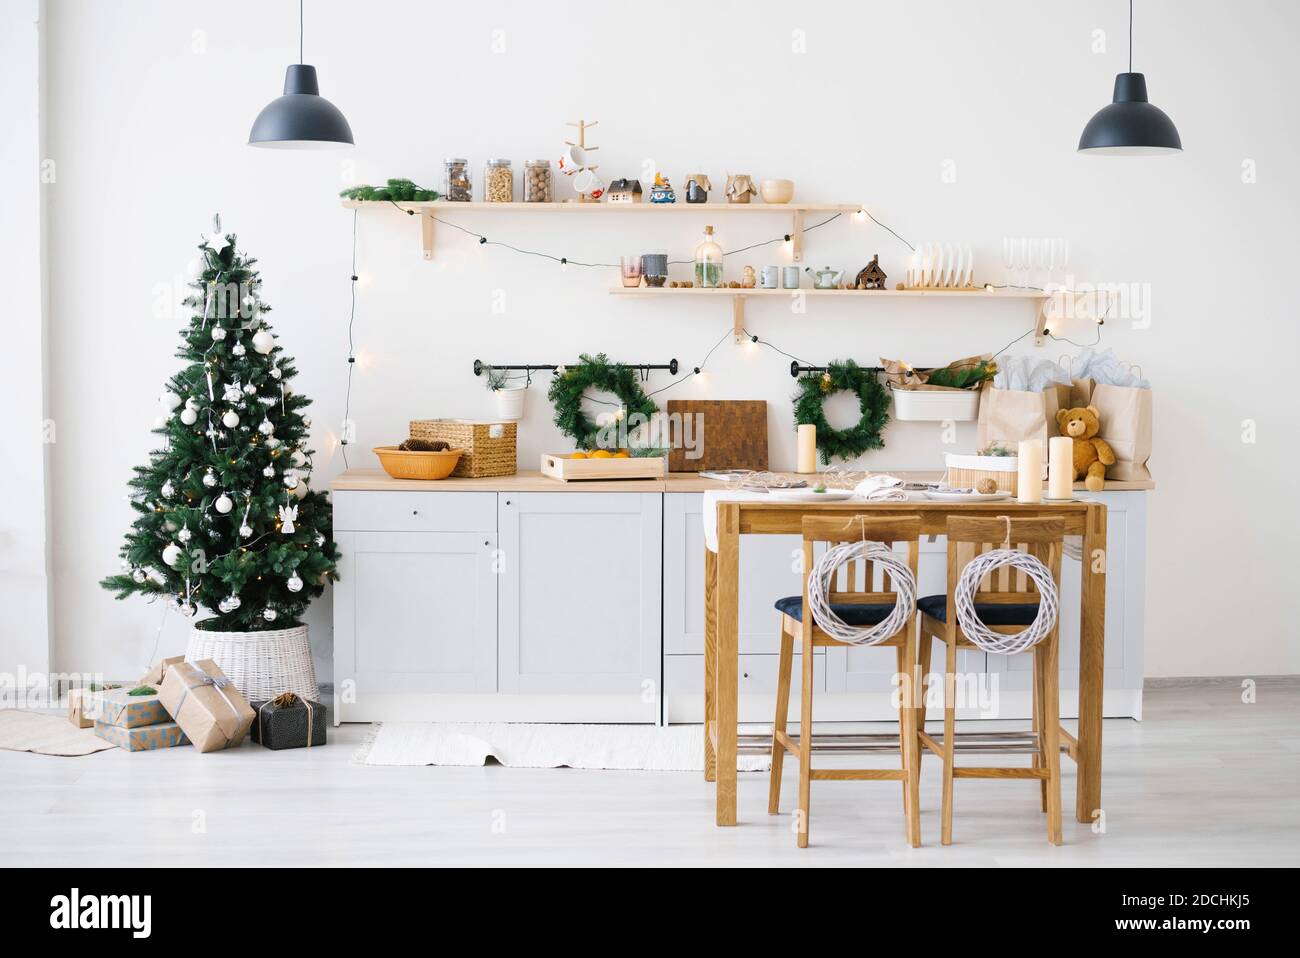 Nouvel an et Noël. Cuisine scandinave festive dans des décorations de Noël. Bougies, branches de sapin, supports en bois, table. Banque D'Images